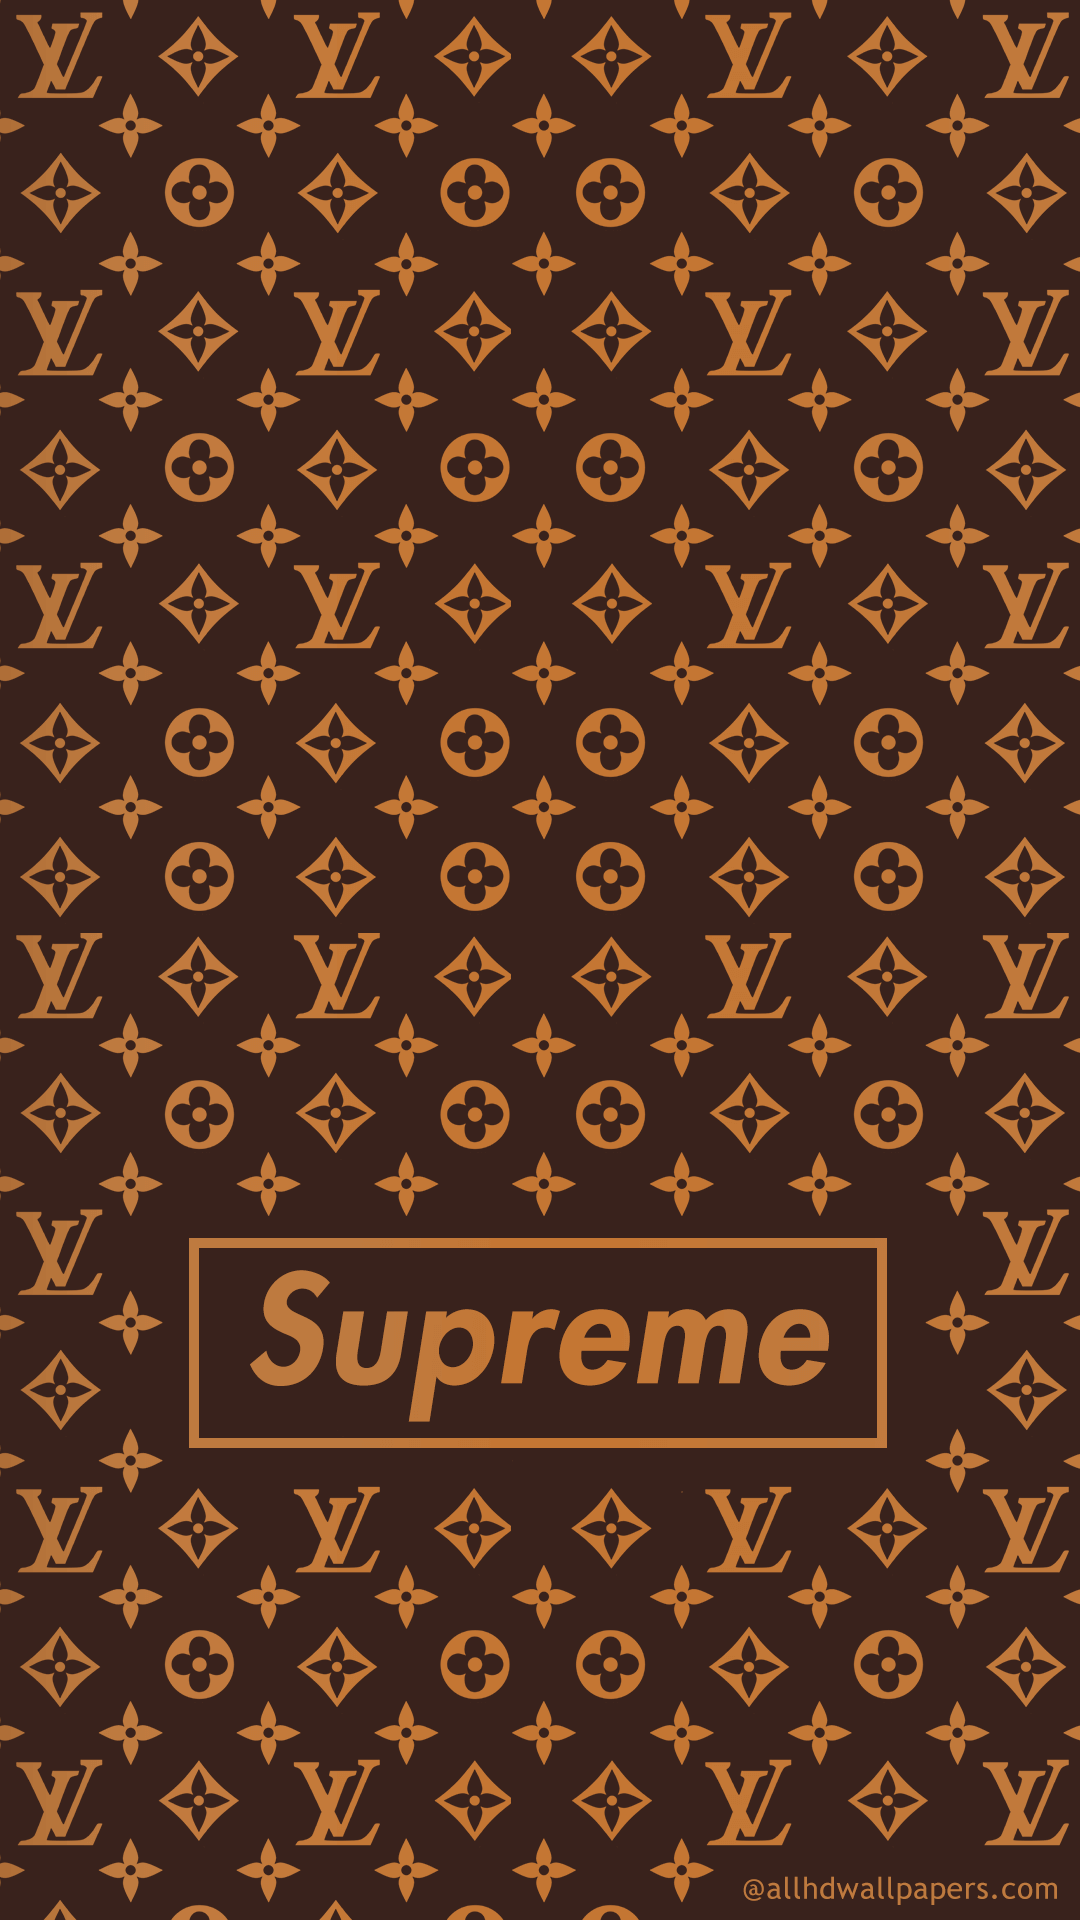 Supreme Lv Gucci Wallpaper